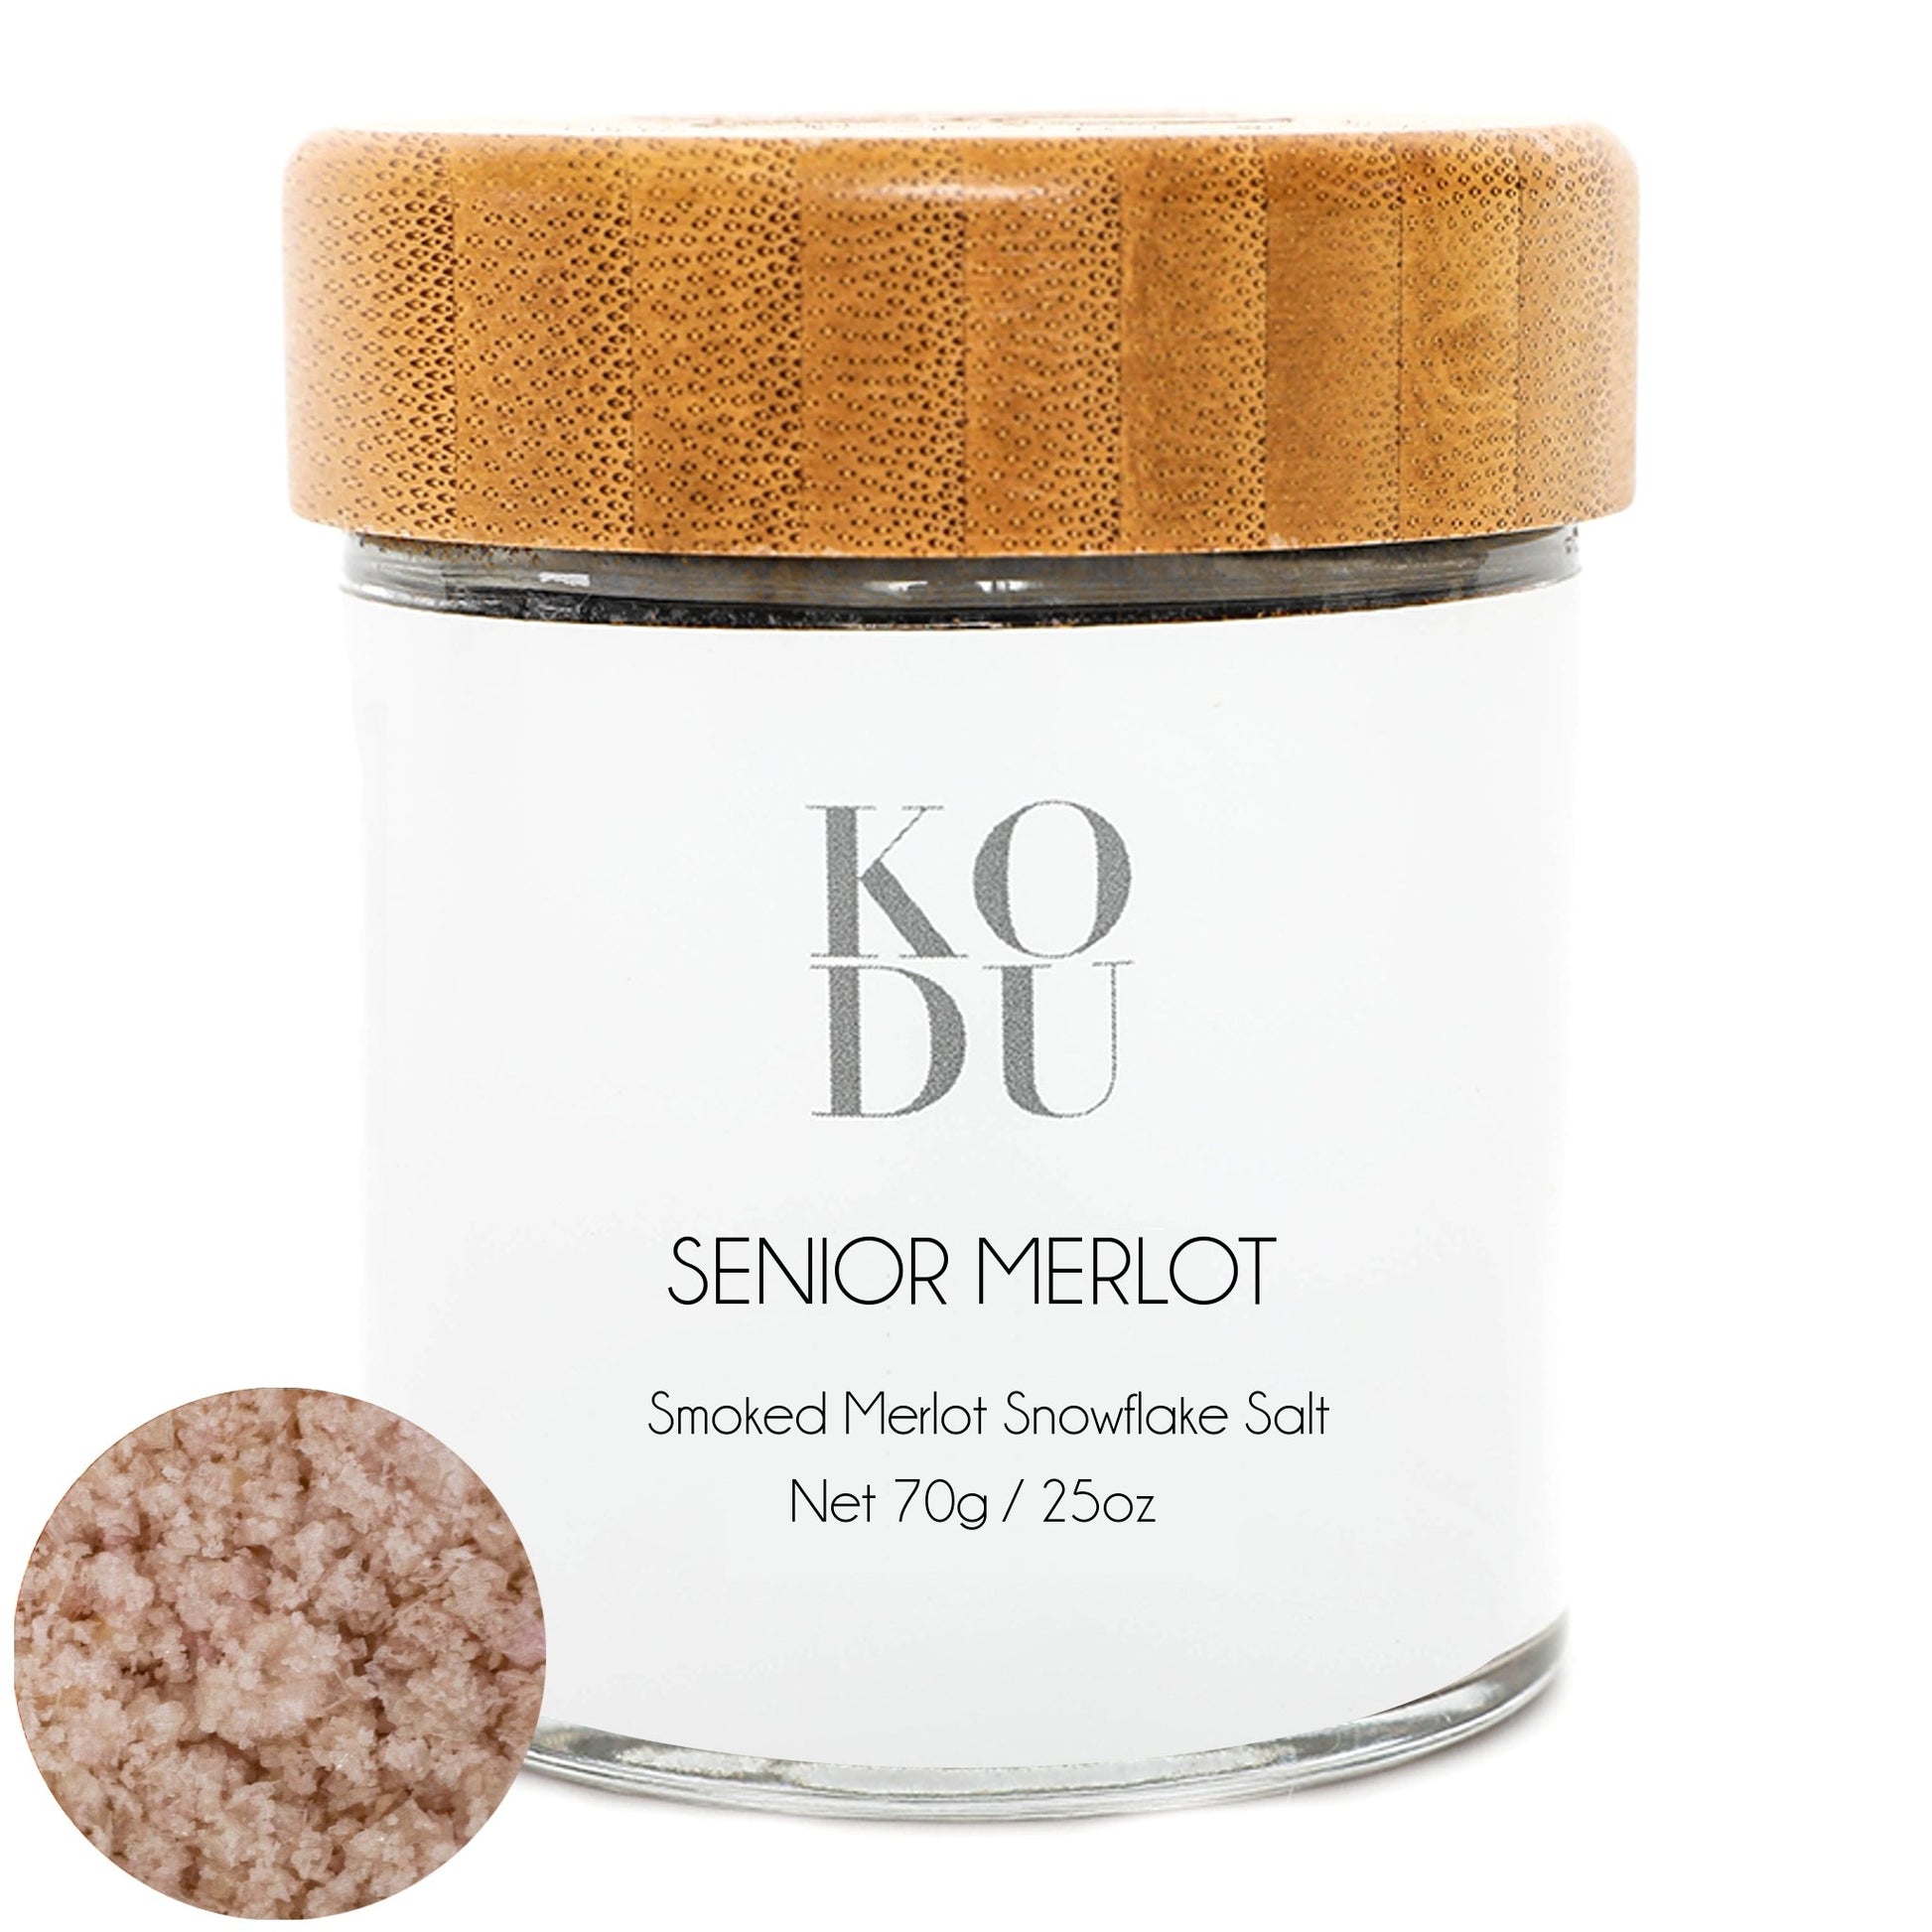 Senior Merlot – Vintage Merlot Smoked Sea Salt - mykodu